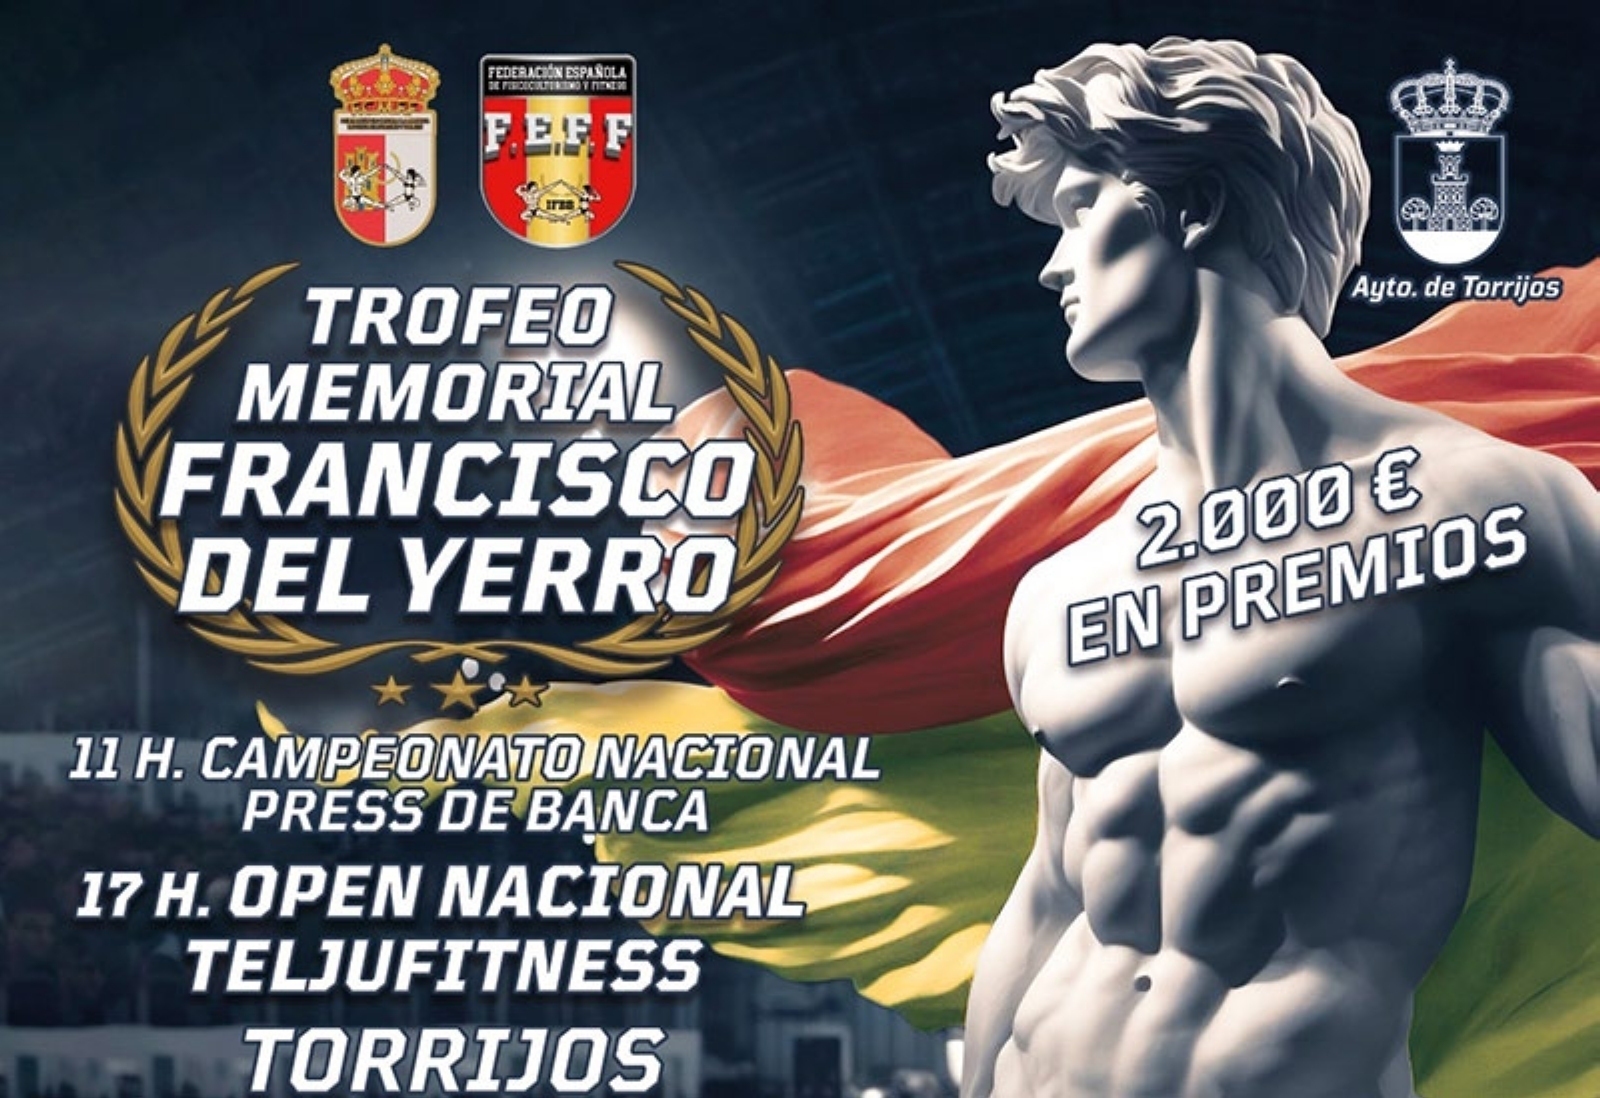 Memorial Francisco del Yerro 2024